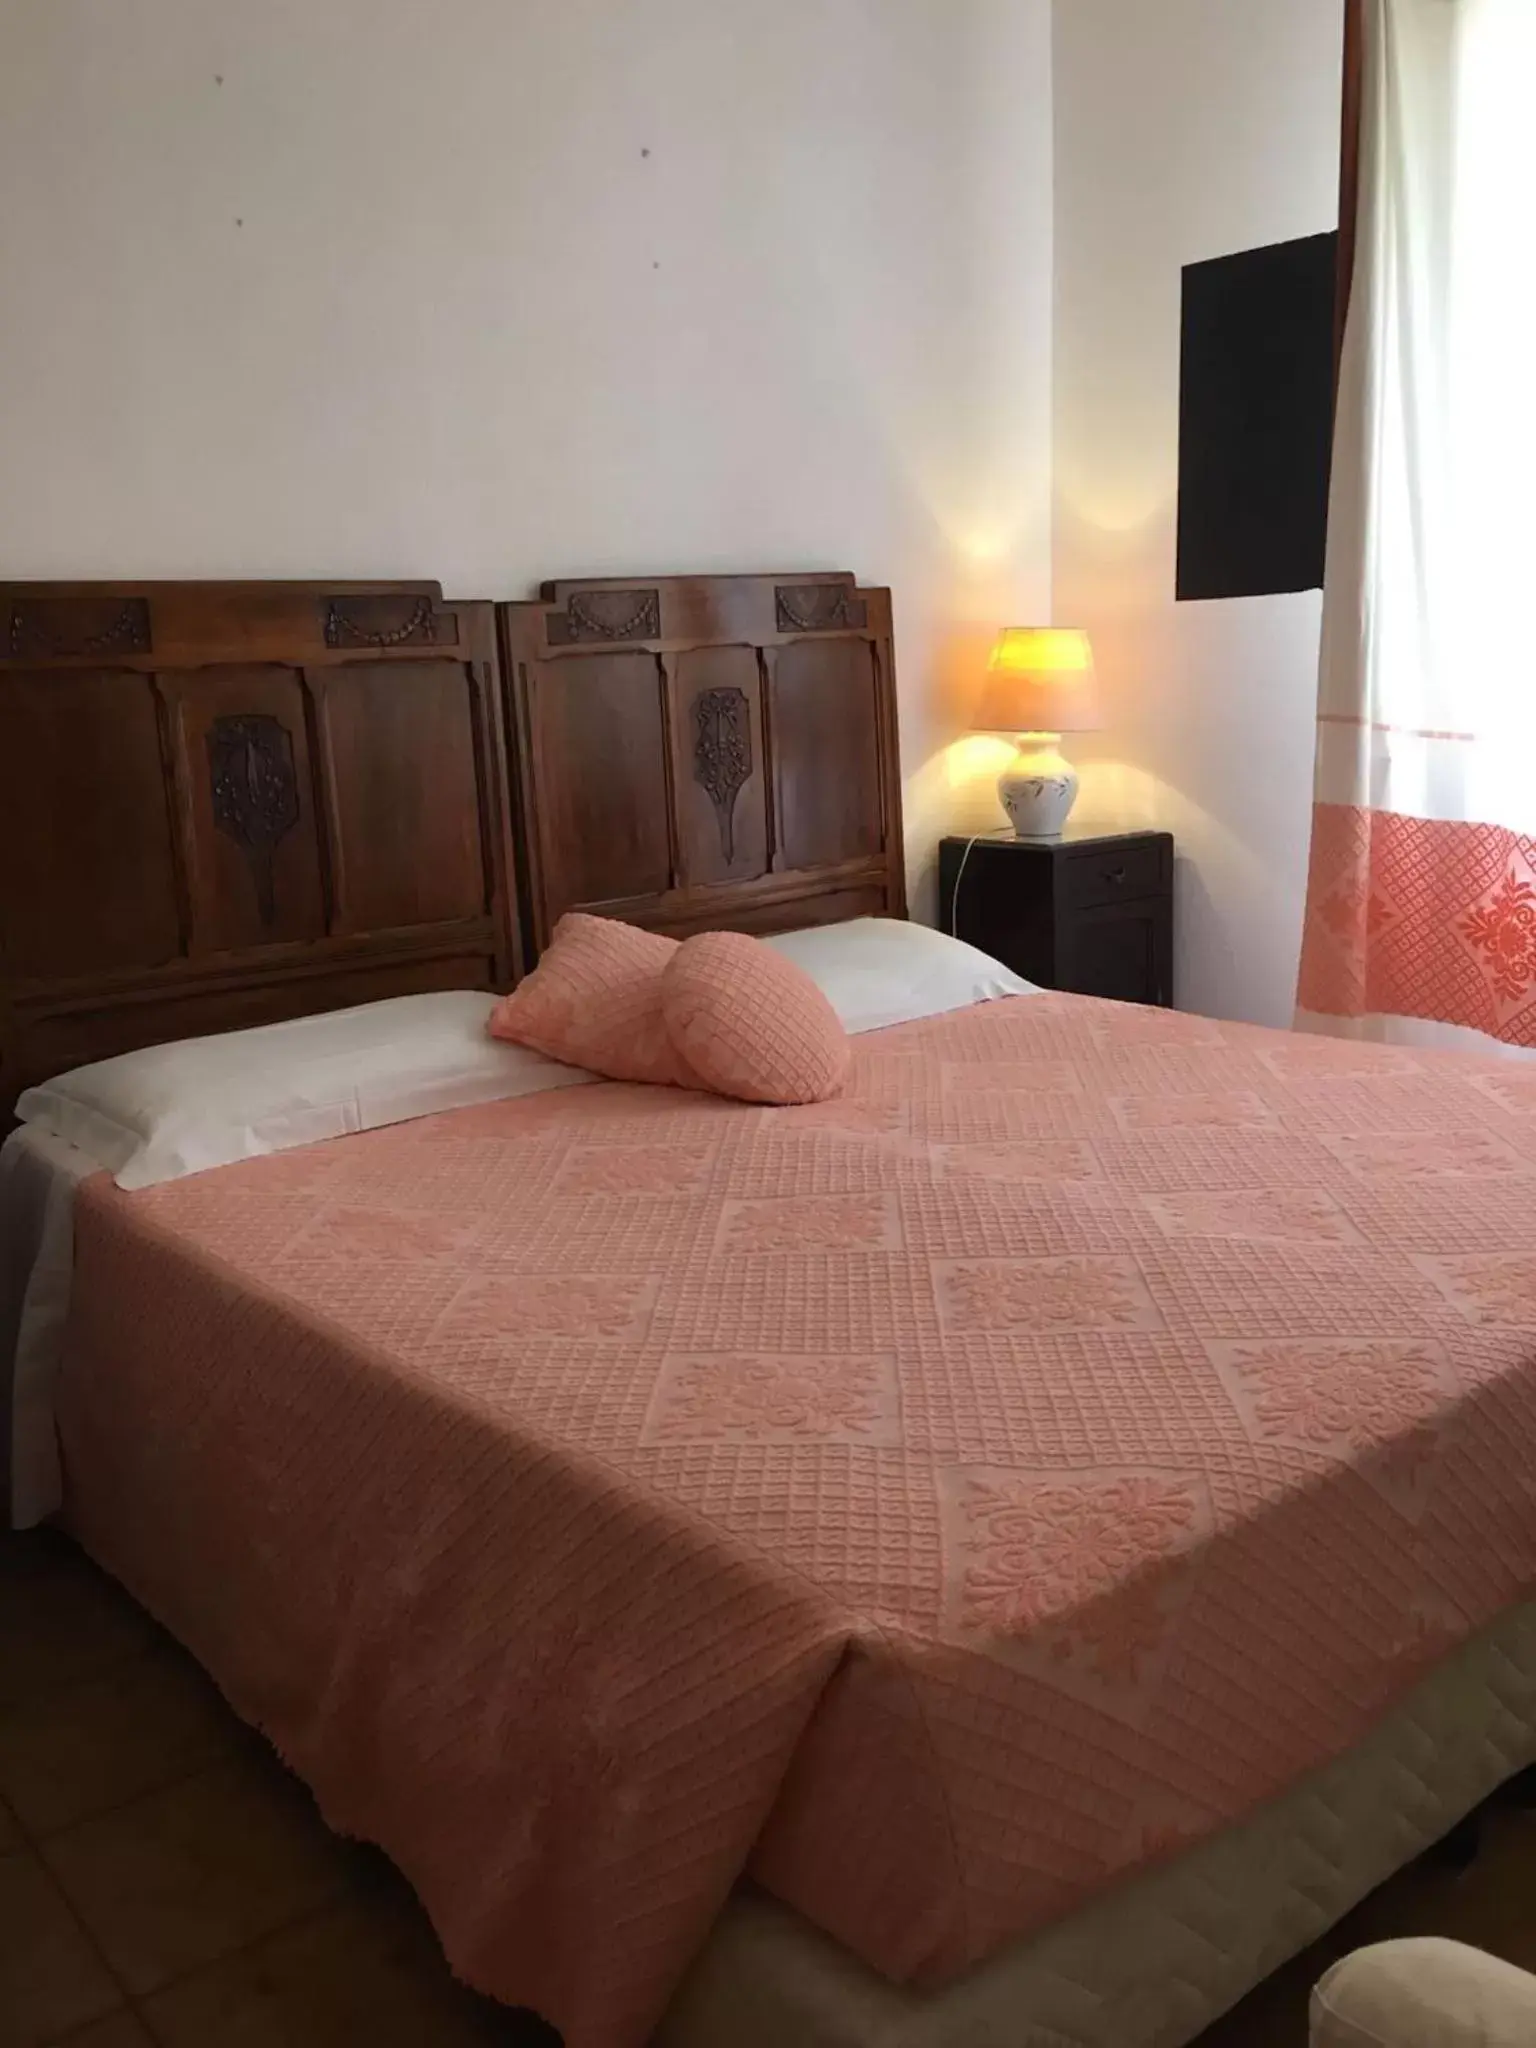 Bedroom, Room Photo in Hotel Su Barchile